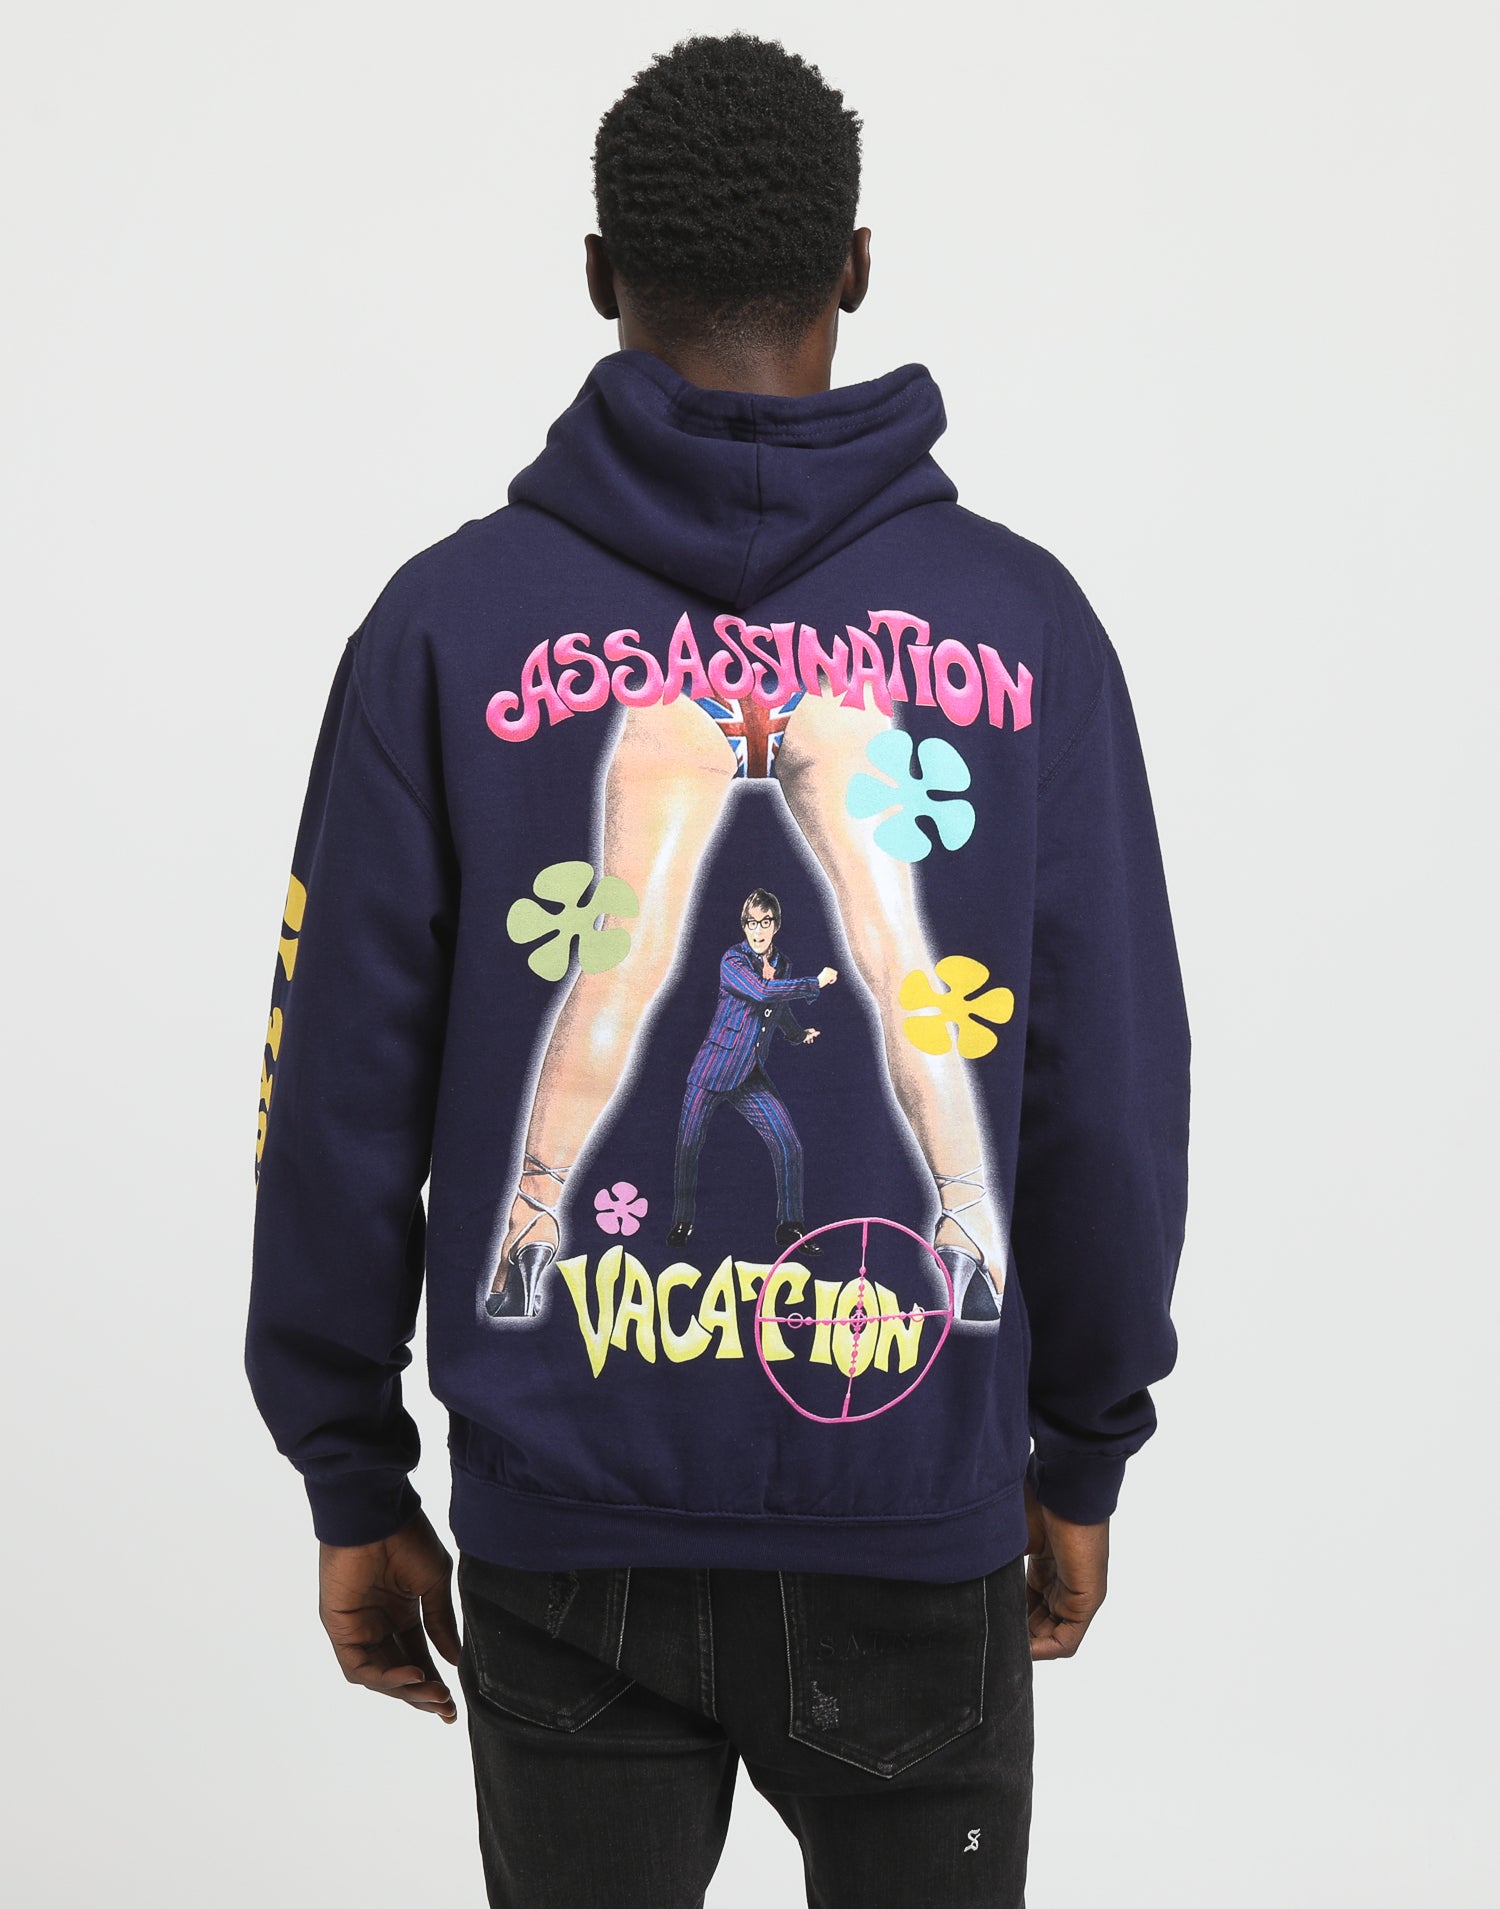 assassination vacation hoodie